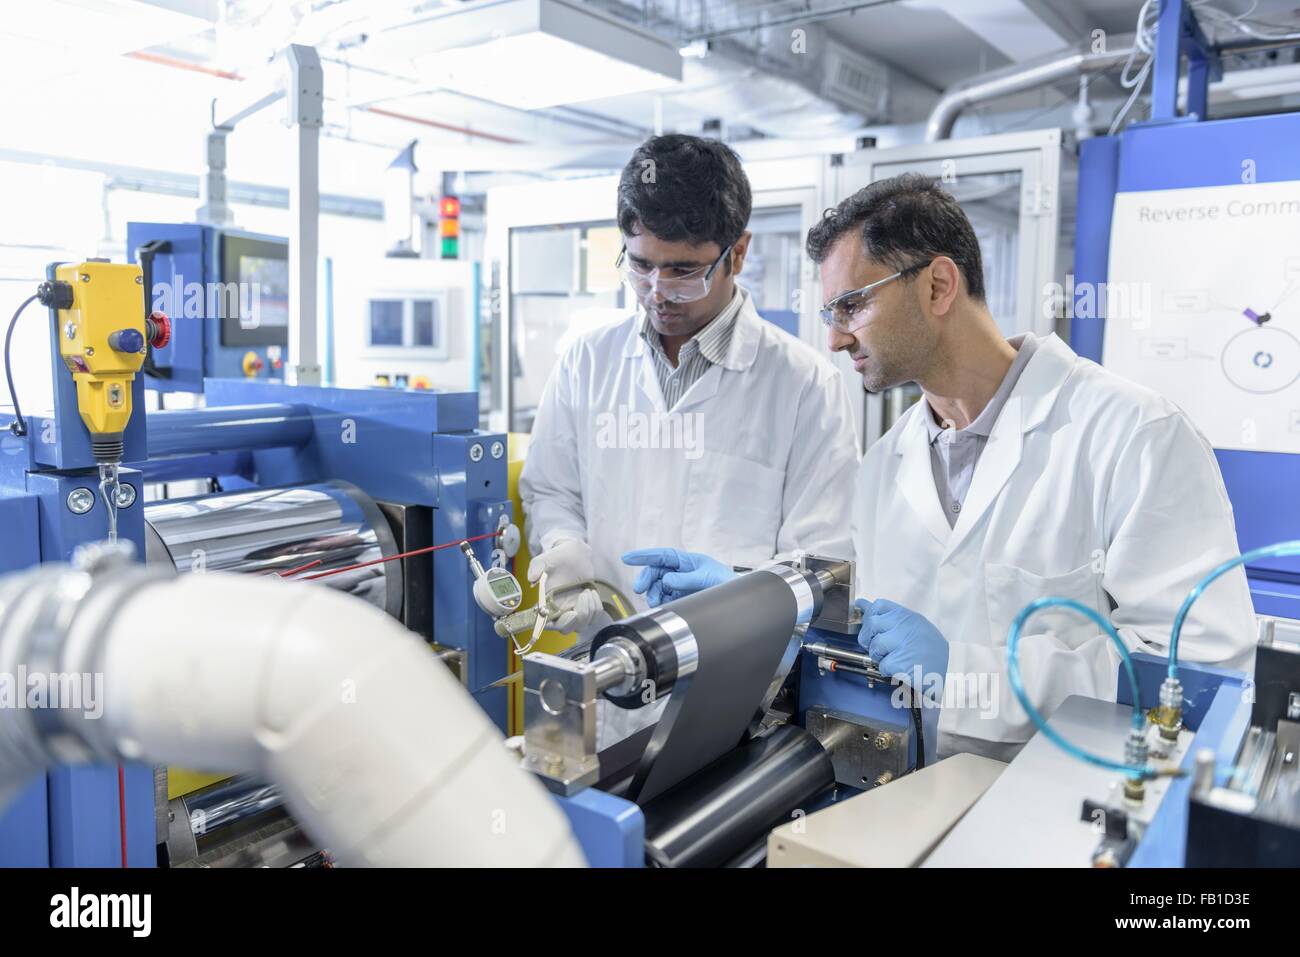 Les scientifiques avec une batterie lithium-ion batterie de production à l'installation de recherche Banque D'Images